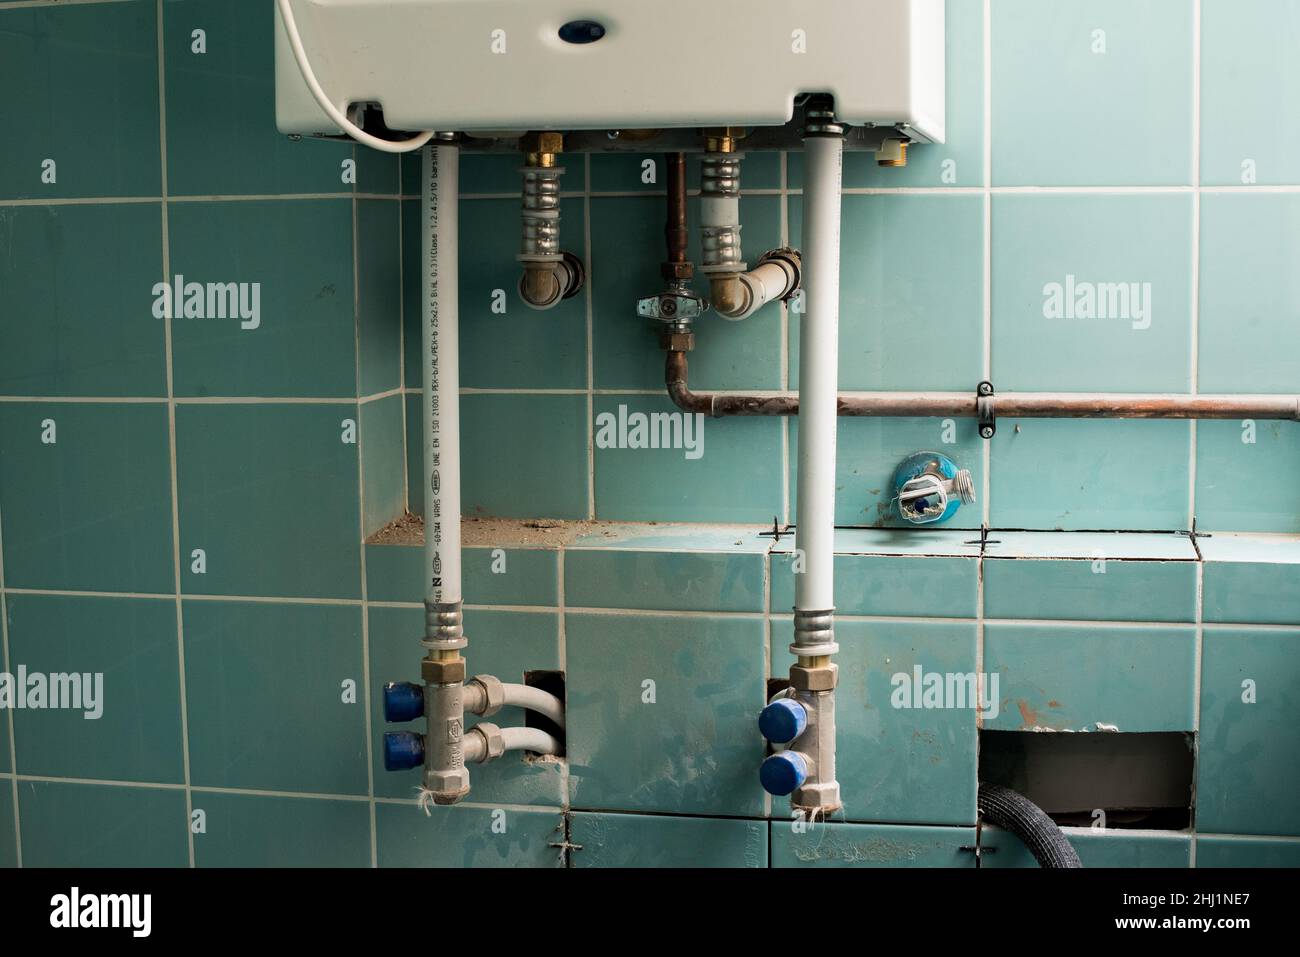 Caldaia di riscaldamento a gas installata in una parete. Sostituire la caldaia. Lavori di ristrutturazione della casa. Foto Stock